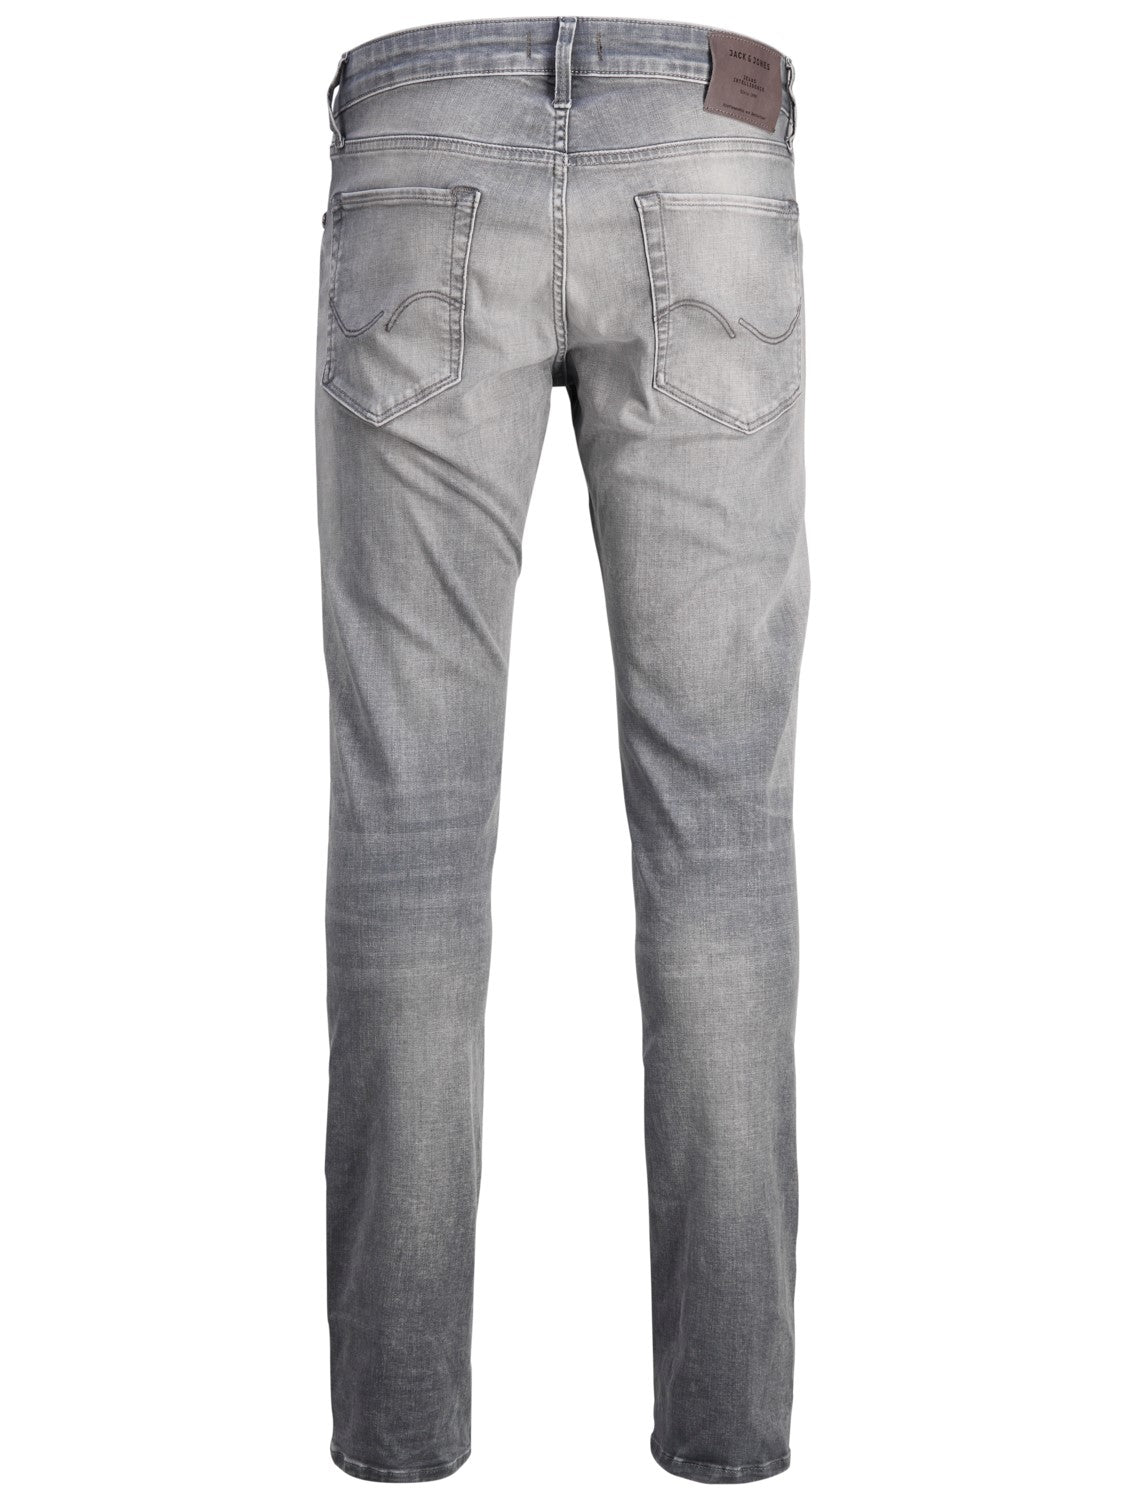 Glenn 257 Grey Slim Fit Jeans - Spirit Clothing